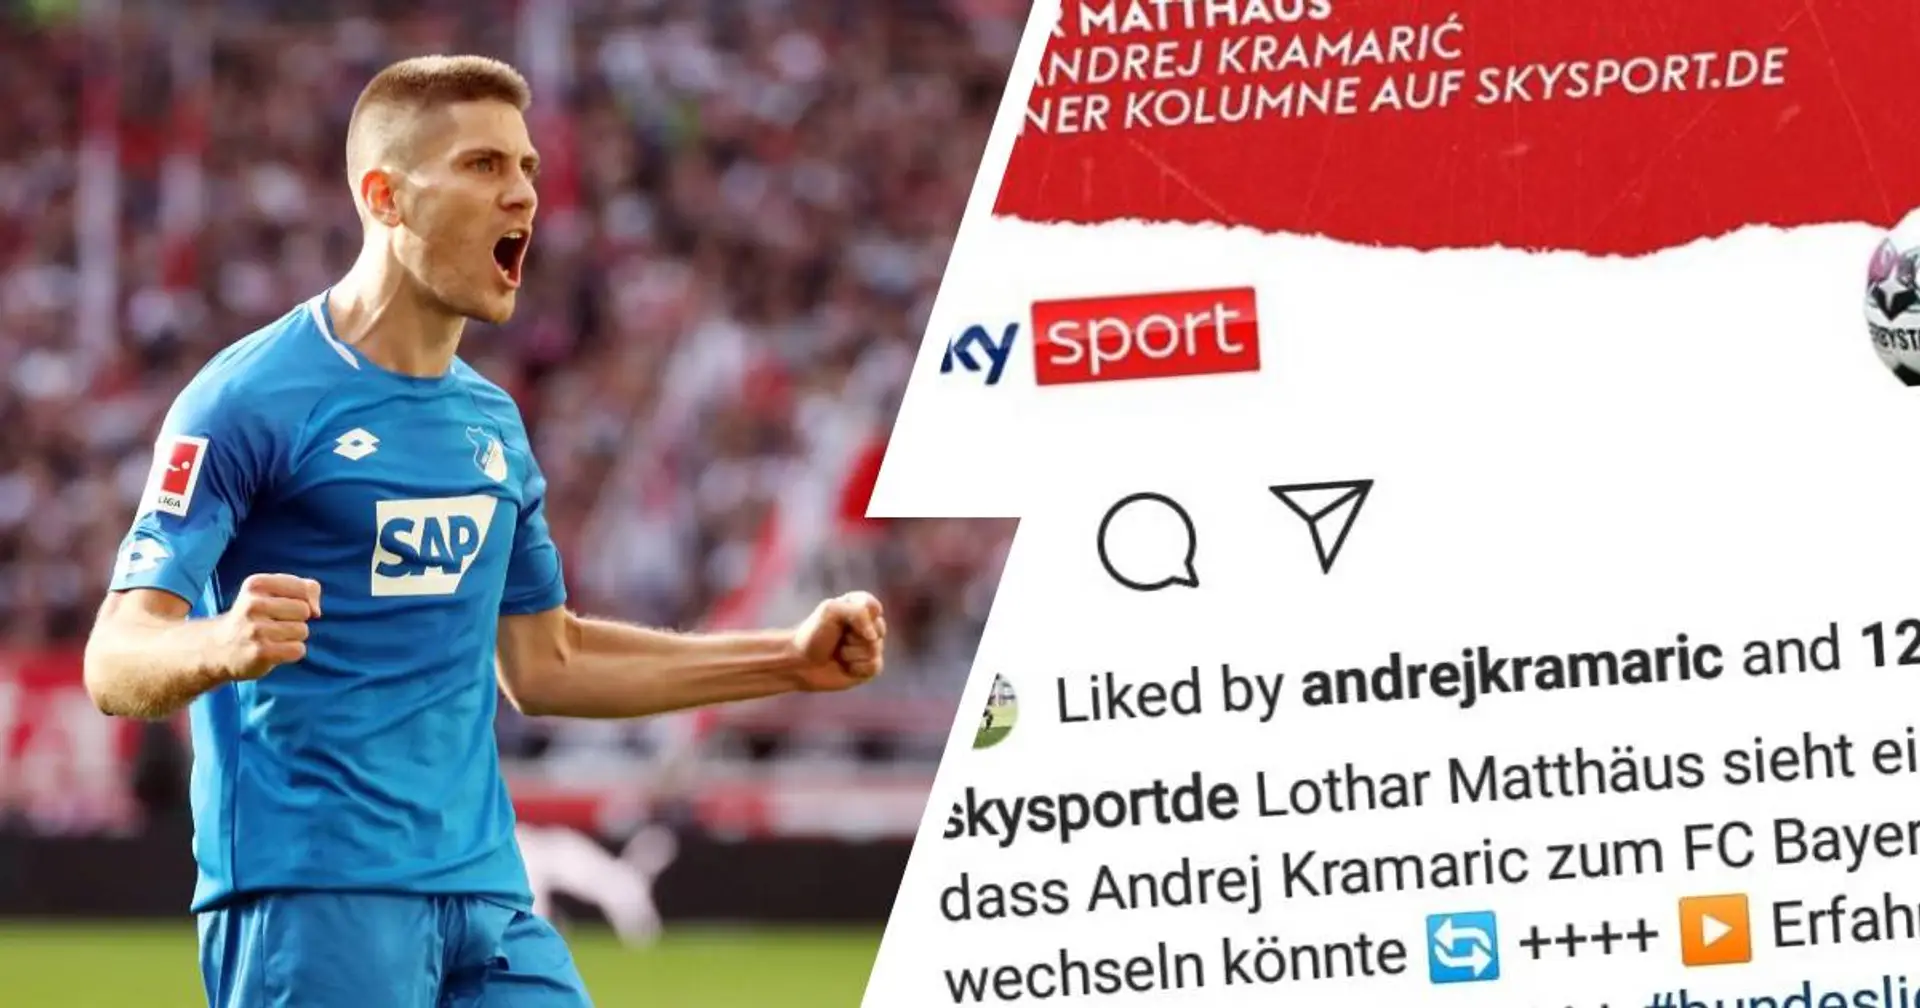 "Potenzial für Bayern": Kramaric reagiert auf Matthäus' Lob mit einem Instagram-Like